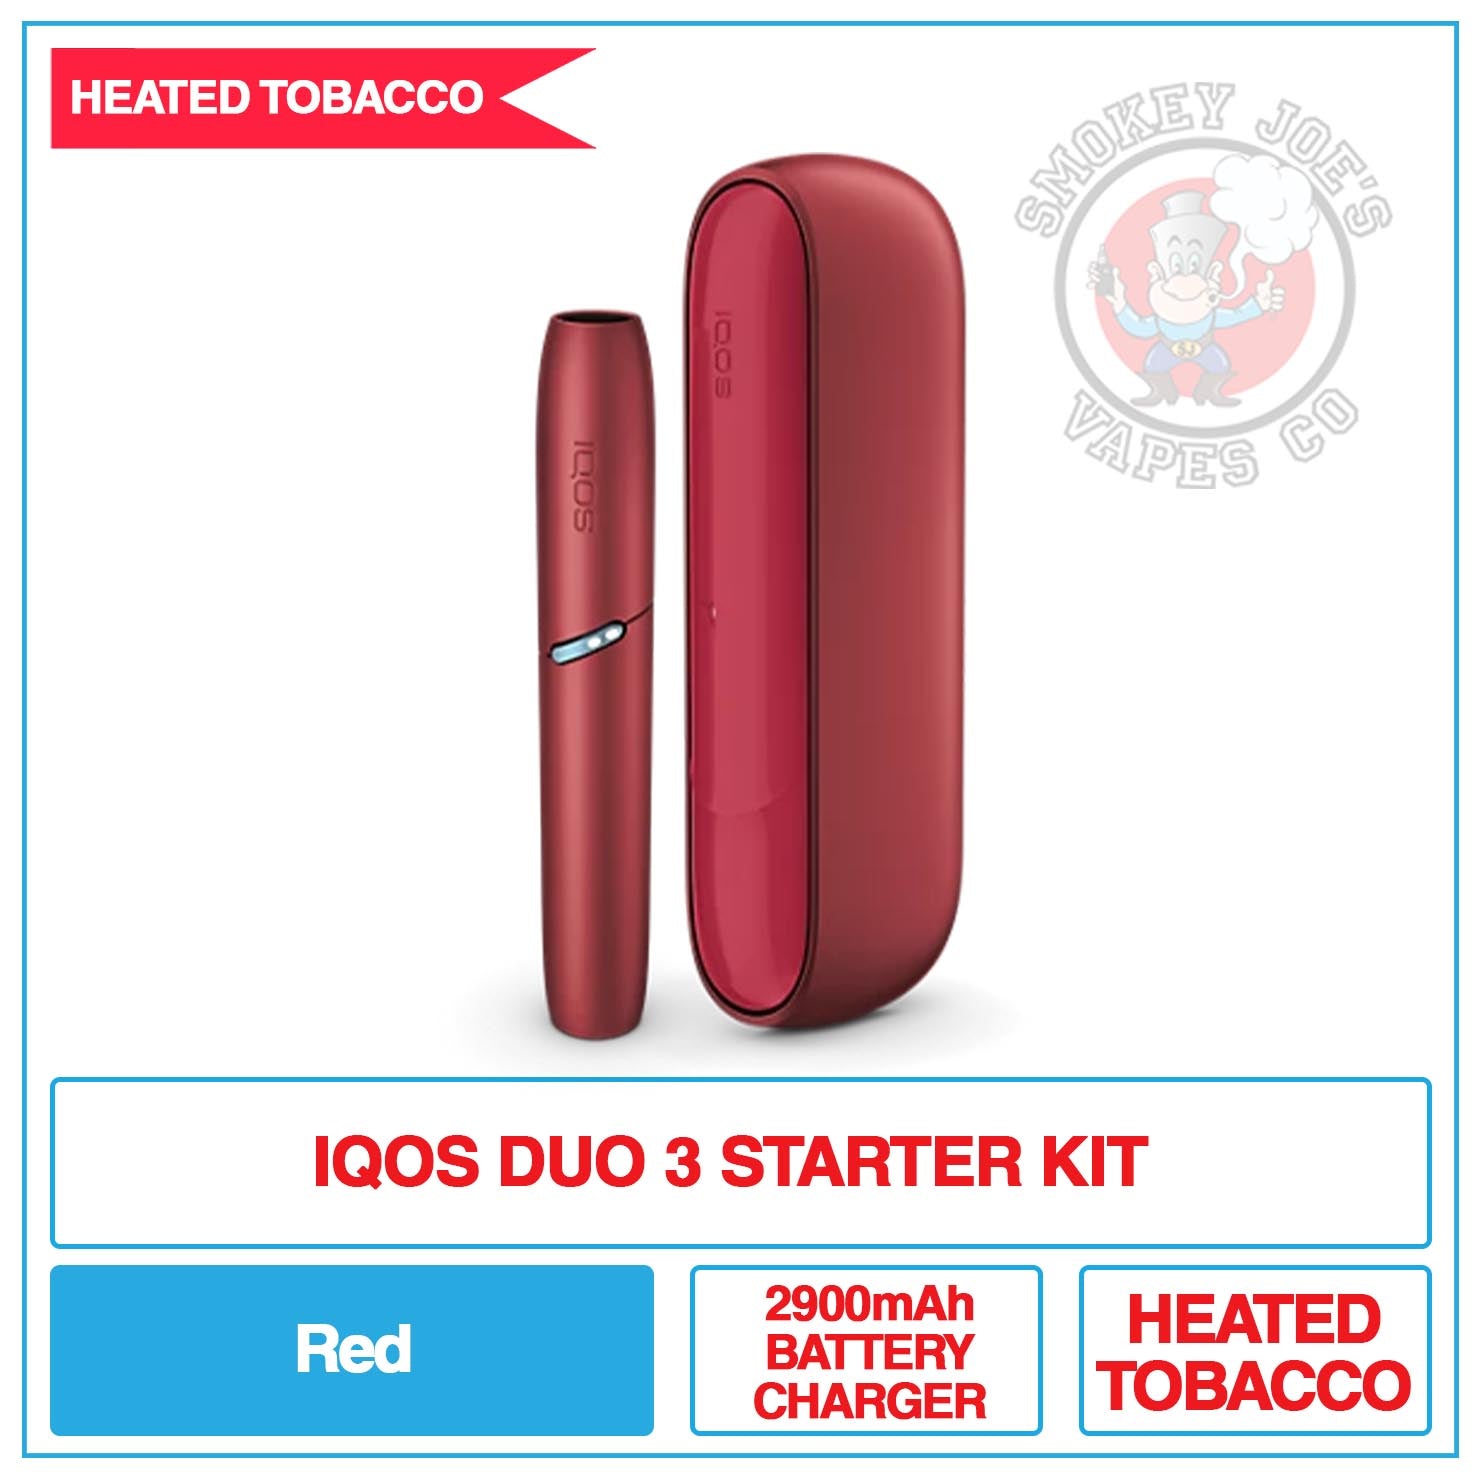 IQOS - Duo 3 - Starter Kit